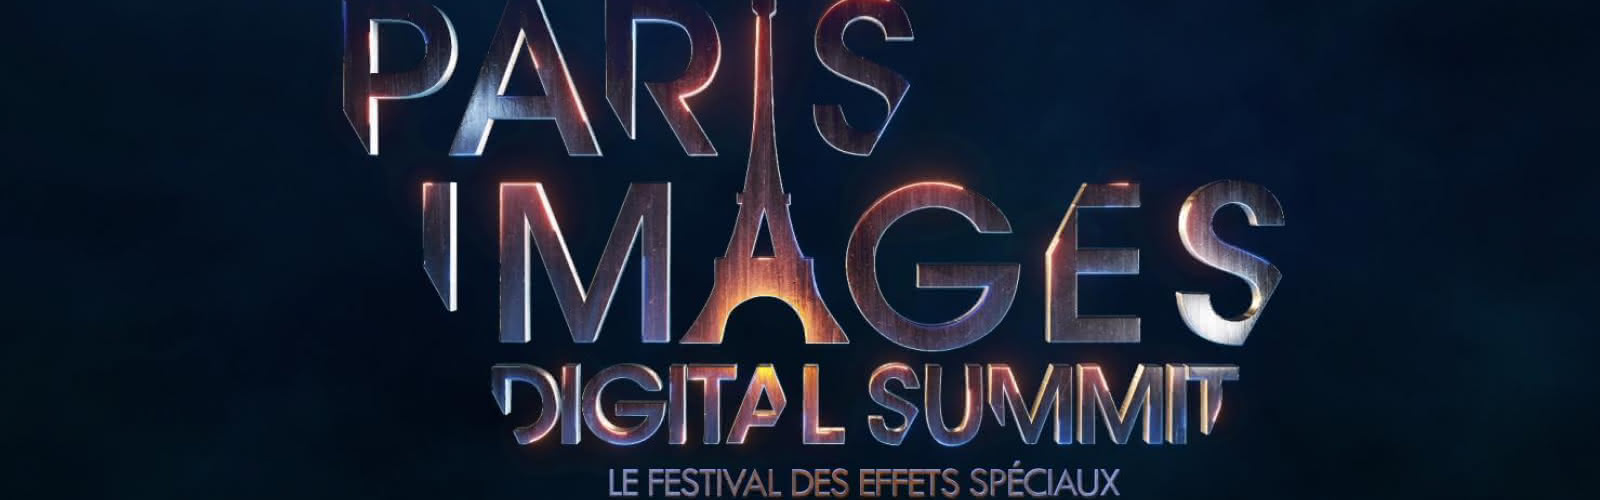 Paris Images Digital Summit